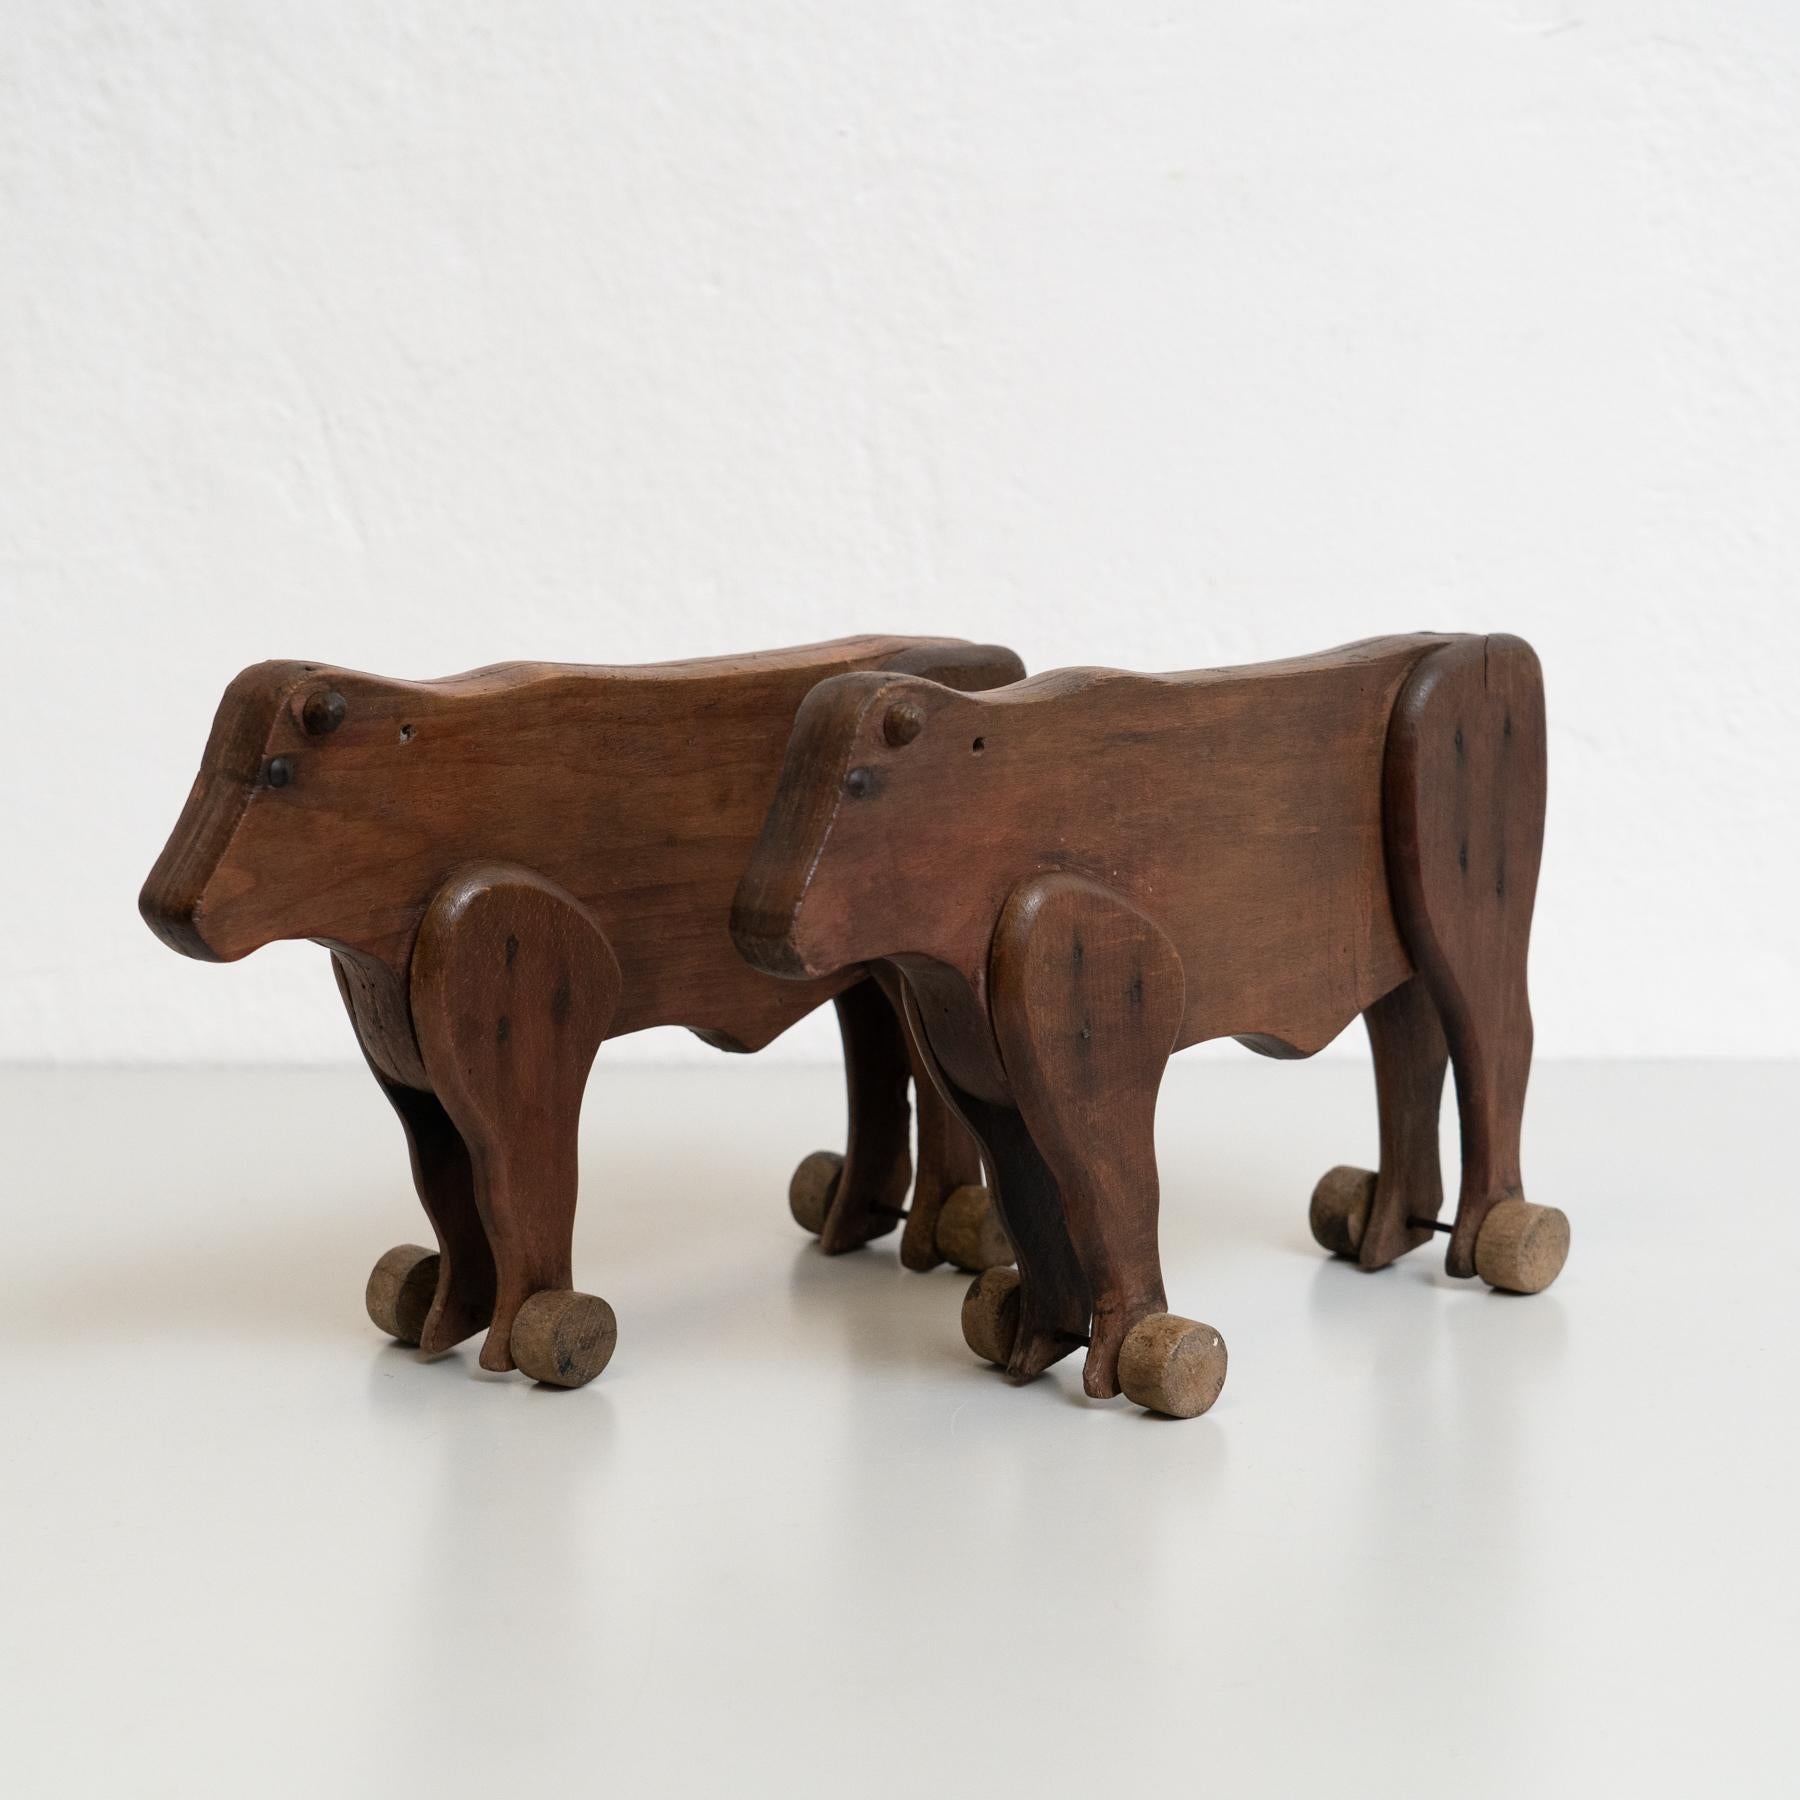 Satz von zwei rustikalen, traditionellen Kuh-Skulpturen aus Holz des frühen 20.
Hergestellt in Frankreich.

In ursprünglichem Zustand mit geringen Gebrauchsspuren, die dem Alter und dem Gebrauch entsprechen, wobei eine schöne Patina erhalten bleibt.